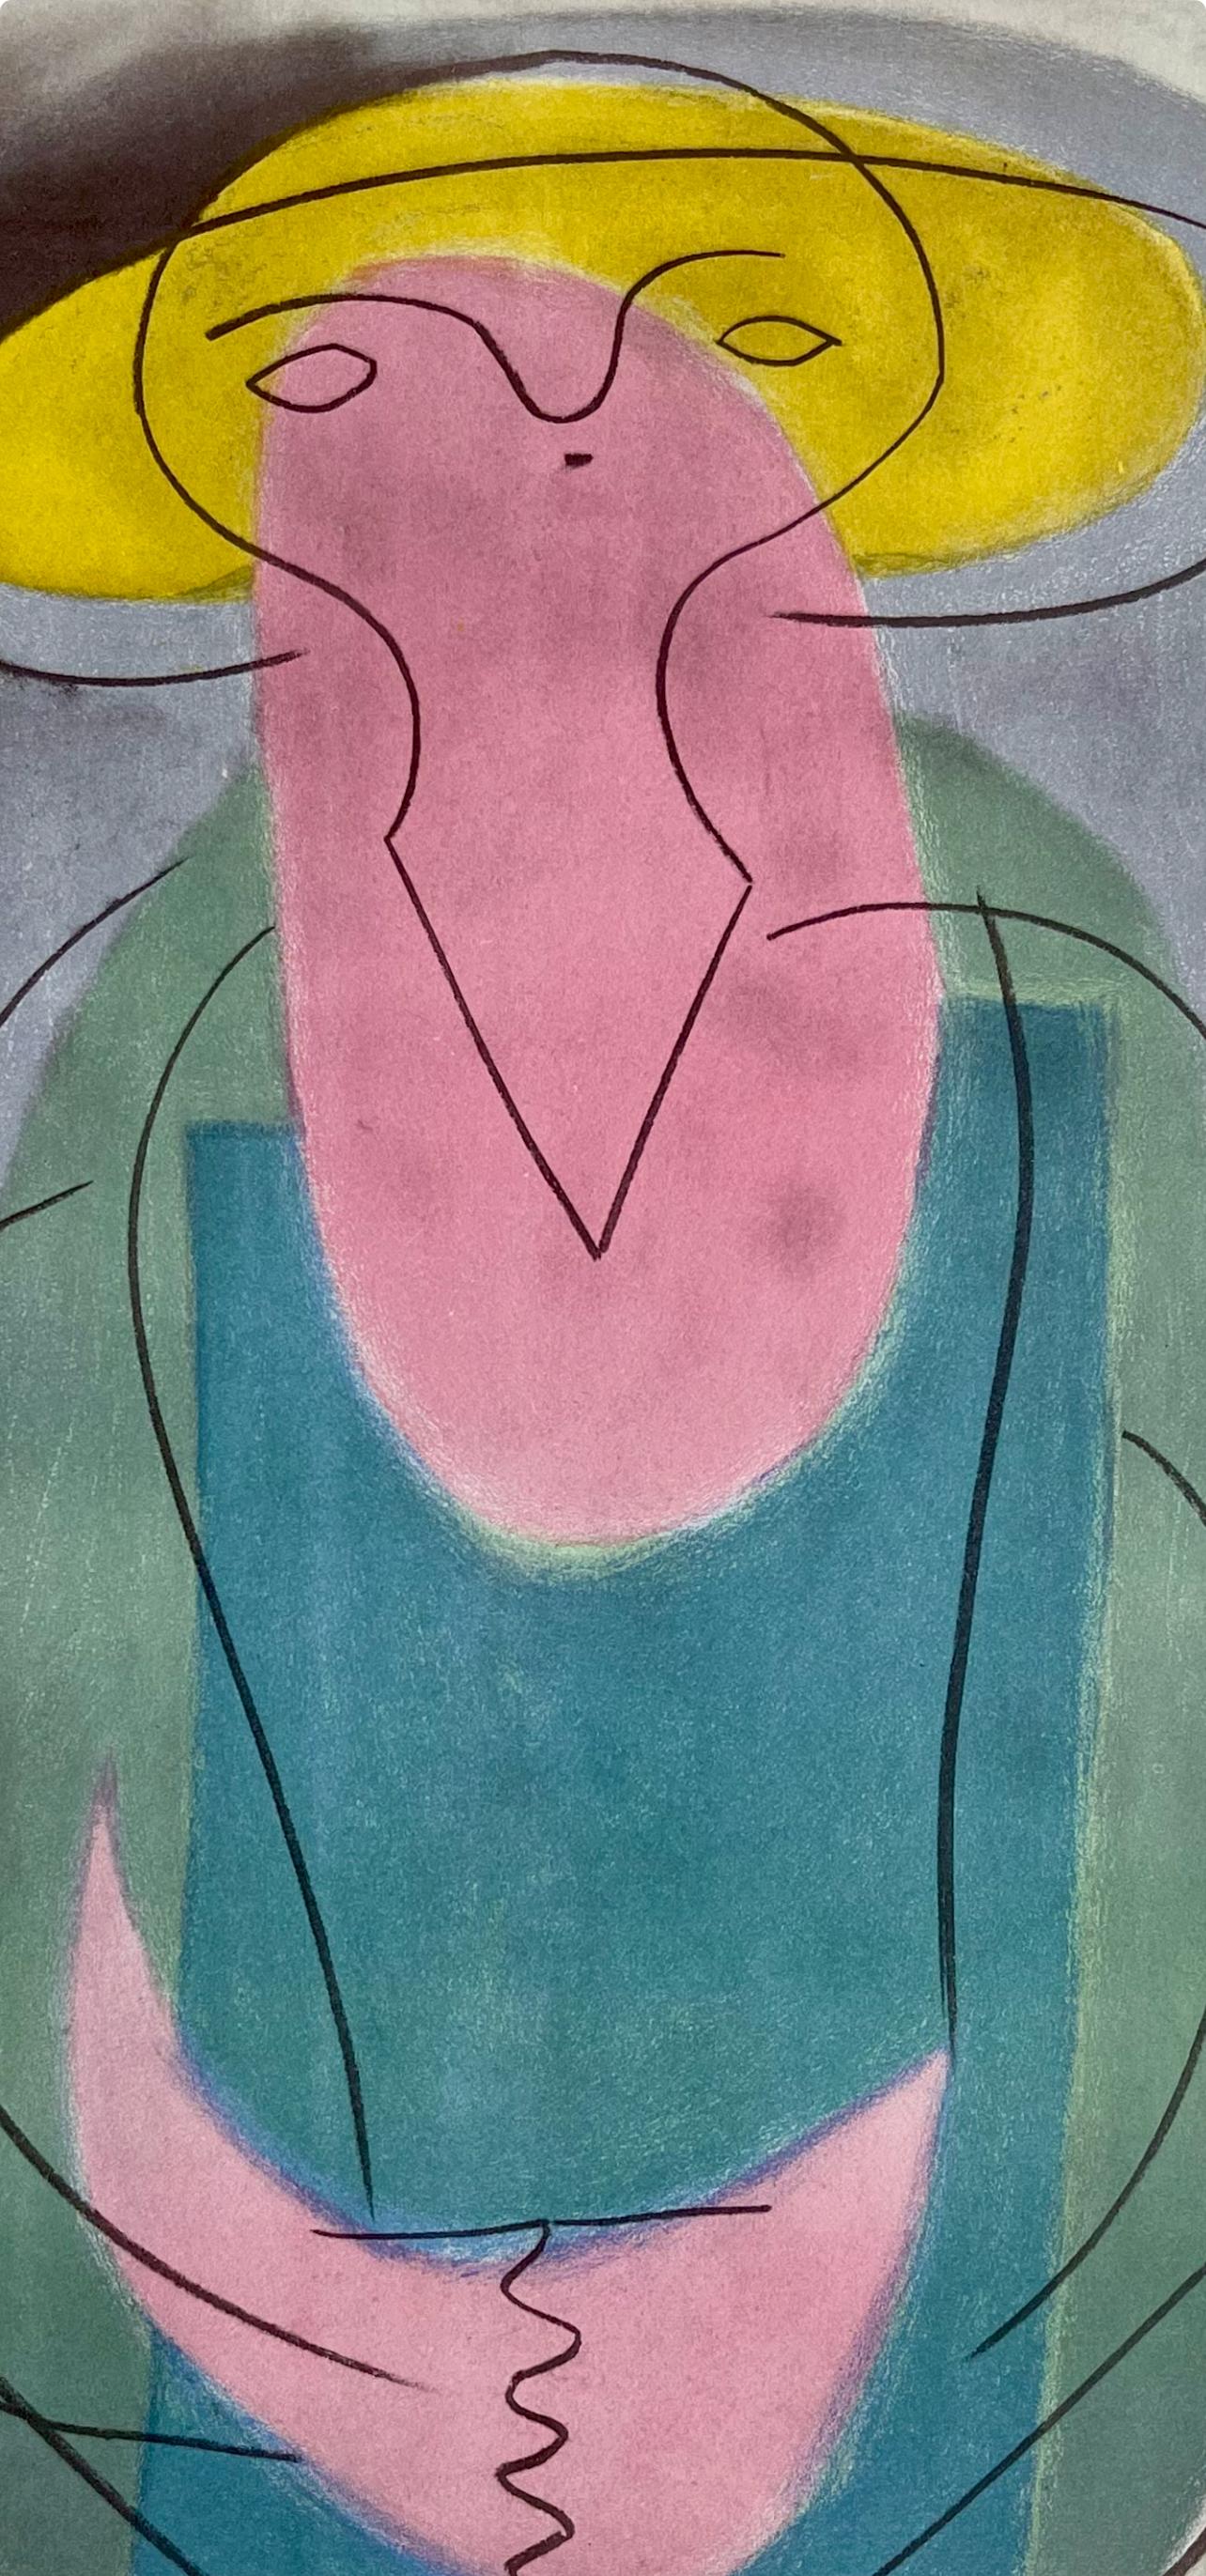 Picasso, Porträt einer Dame, Picasso: Fünfzehn Zeichnungen (nach) – Print von Pablo Picasso